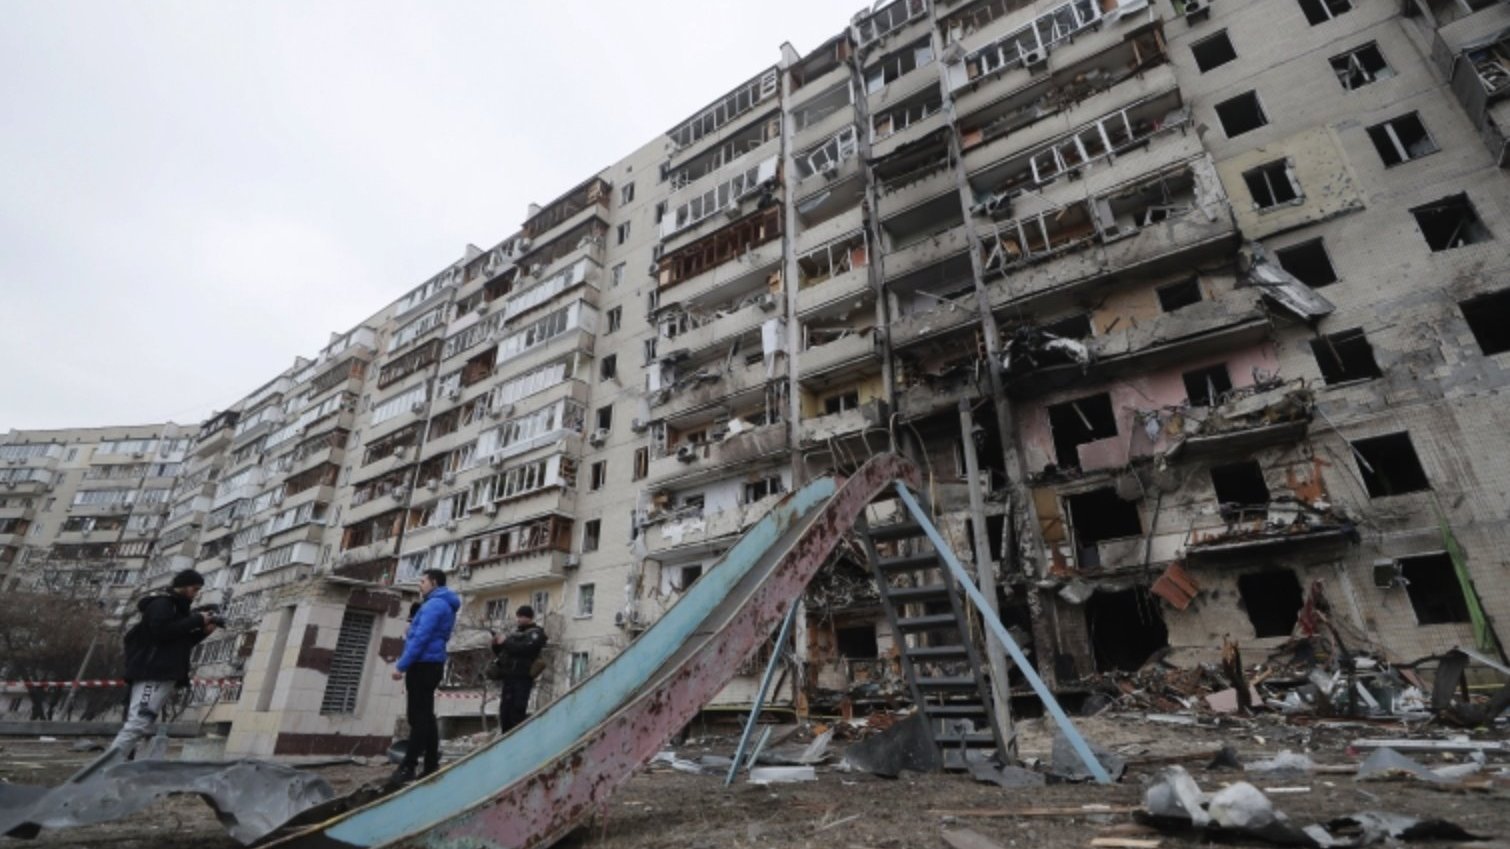 Moscou sob ataque: a guerra da Ucrânia está cada vez